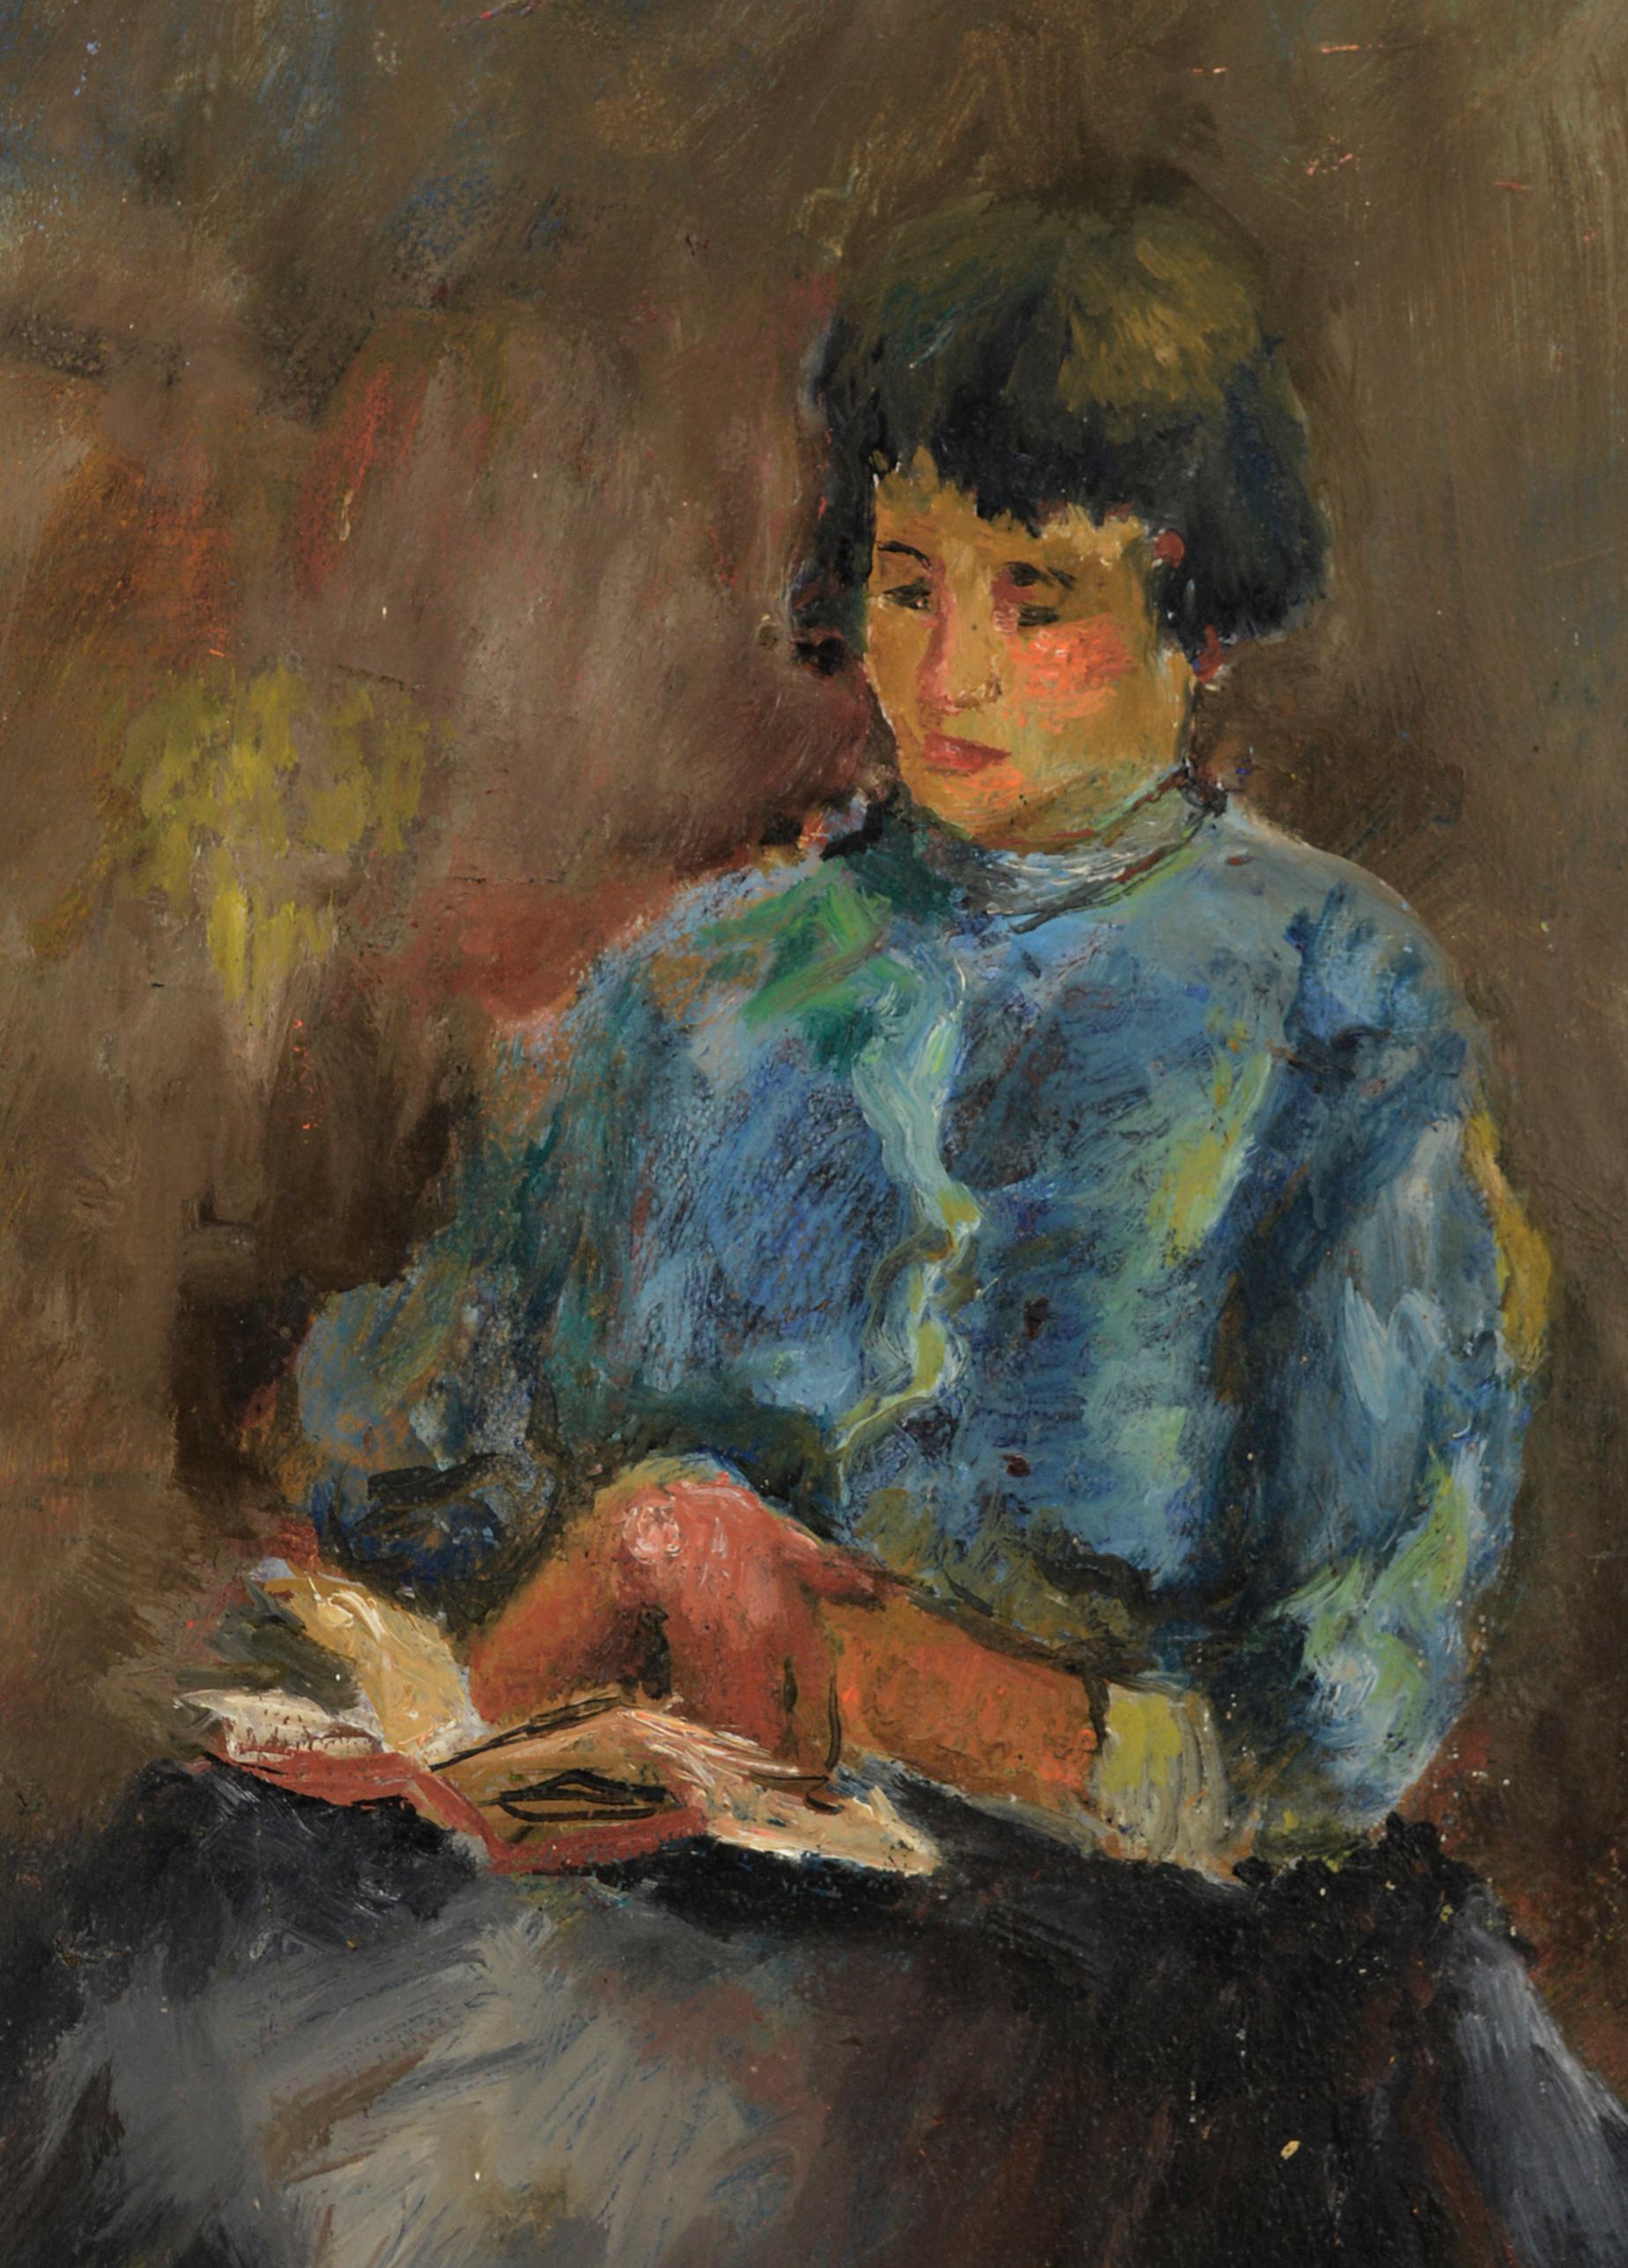 Lesende Frau nach Henri Matisse von Claire Ragueneau
Impressionistische sitzende Frau, die ein Buch liest, nach Henri Matisse von der Künstlerin Claire Ragueneau (Amerikanerin, 1901-1971) aus San Francisco.
Claire stellte in lokalen Banken und